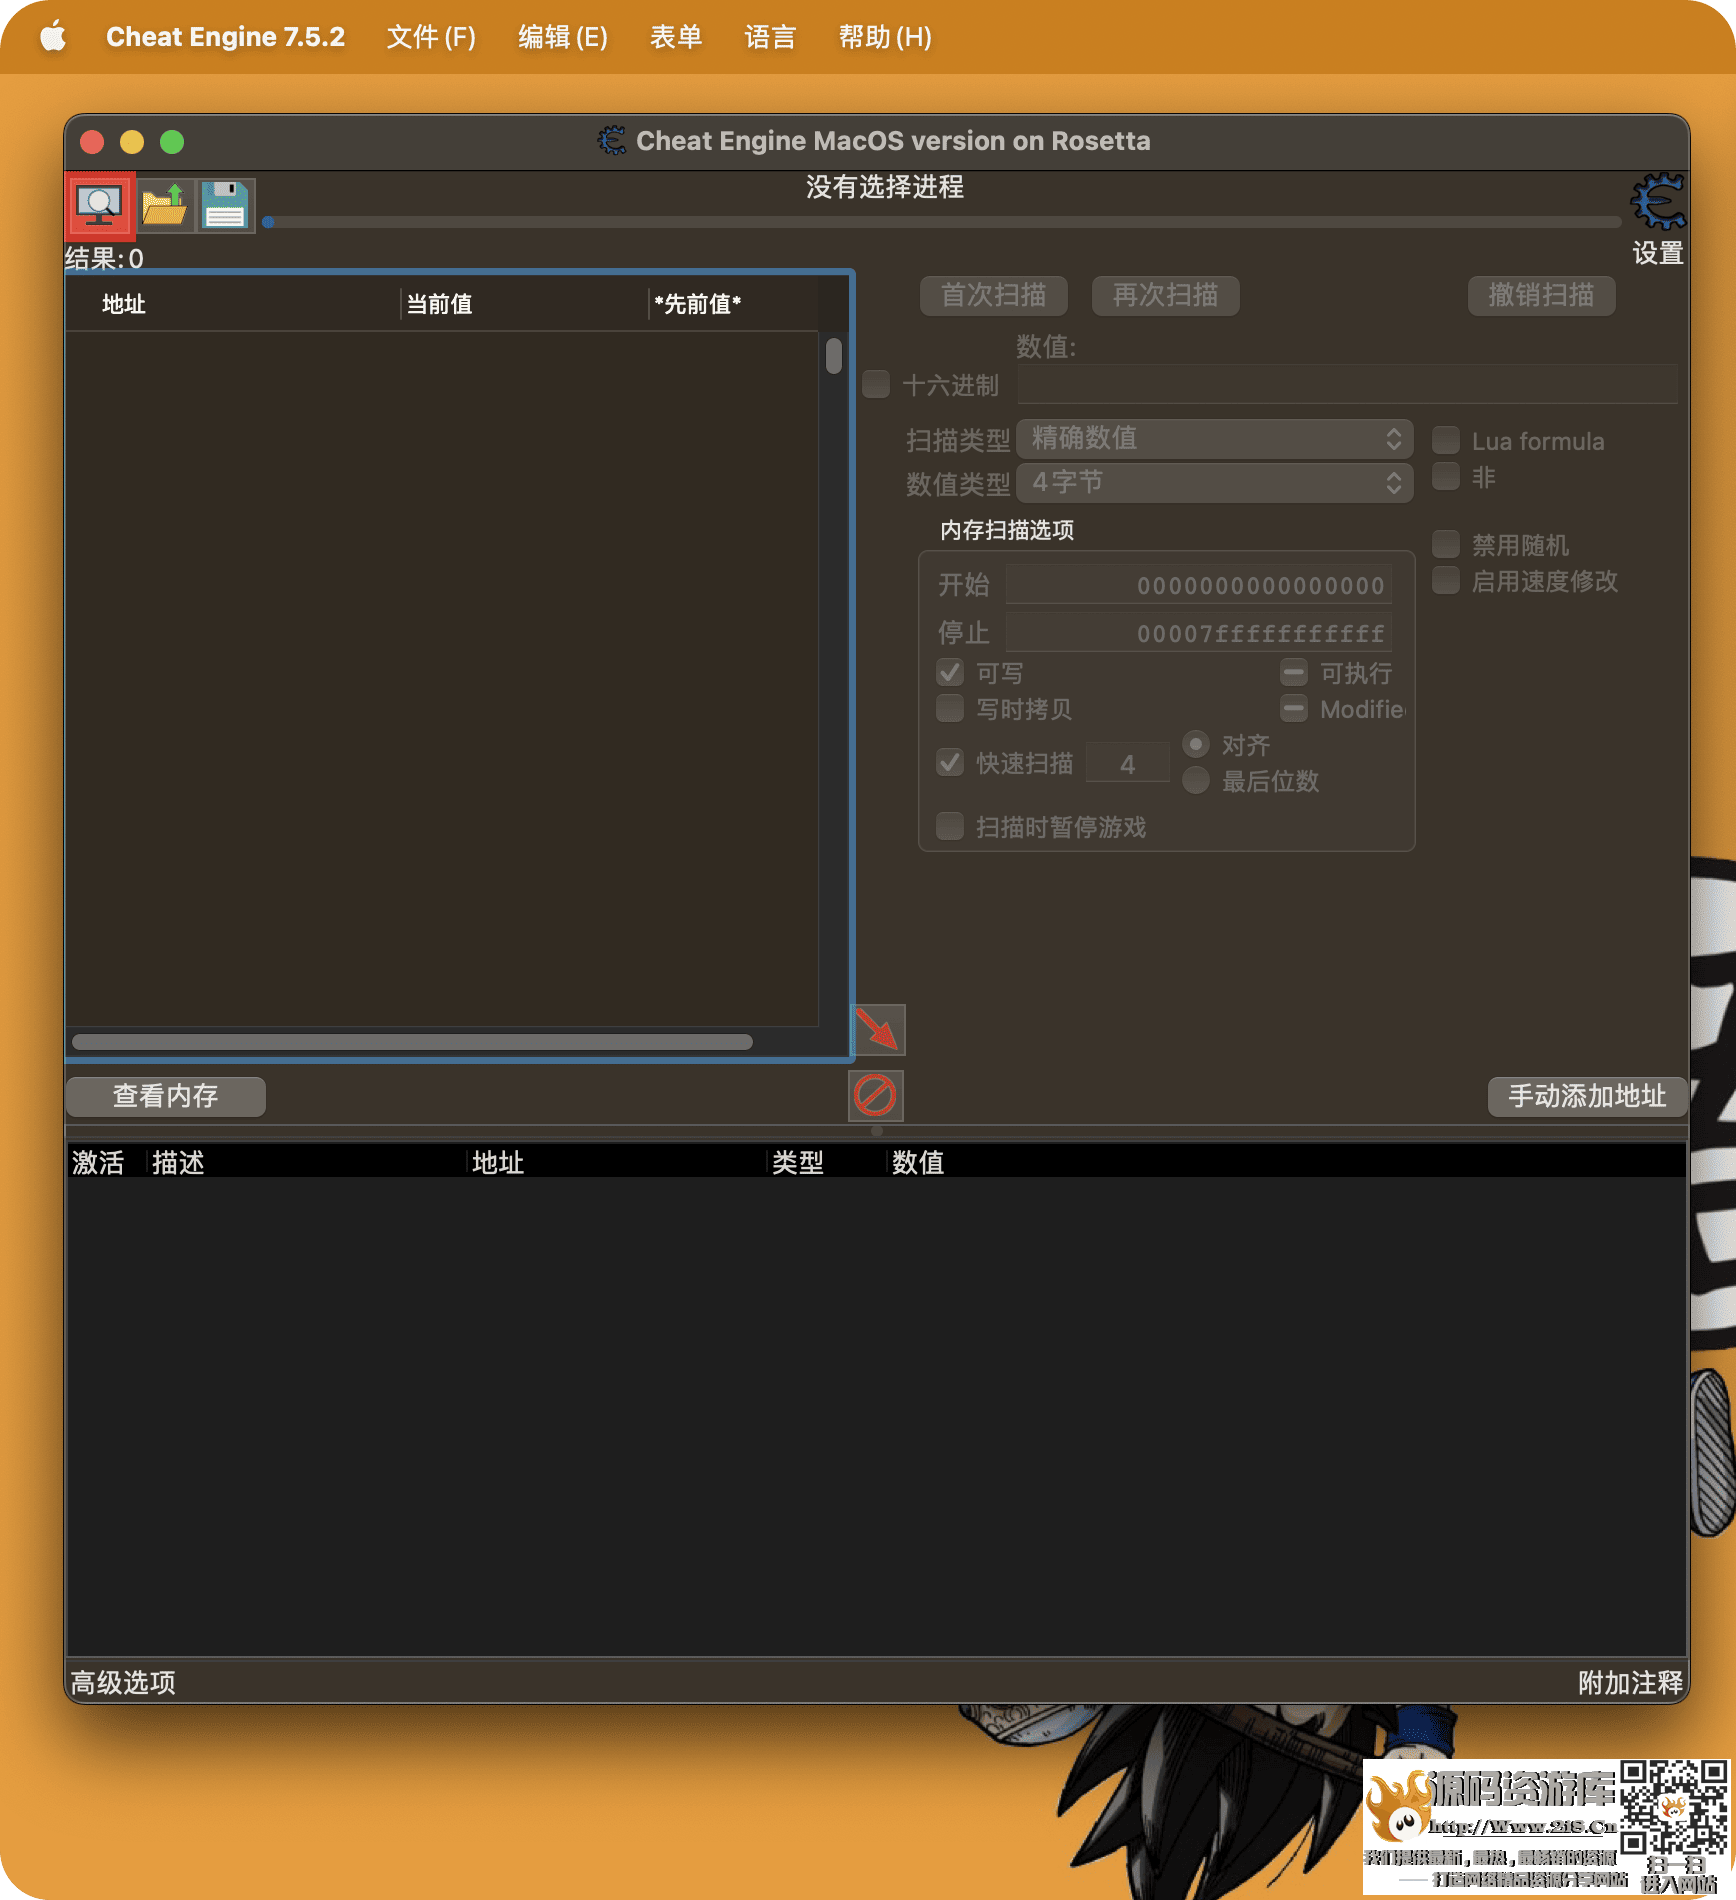 【MacOS】CheatEngine修改器 v7.5.2 0.1最新汉化破解版